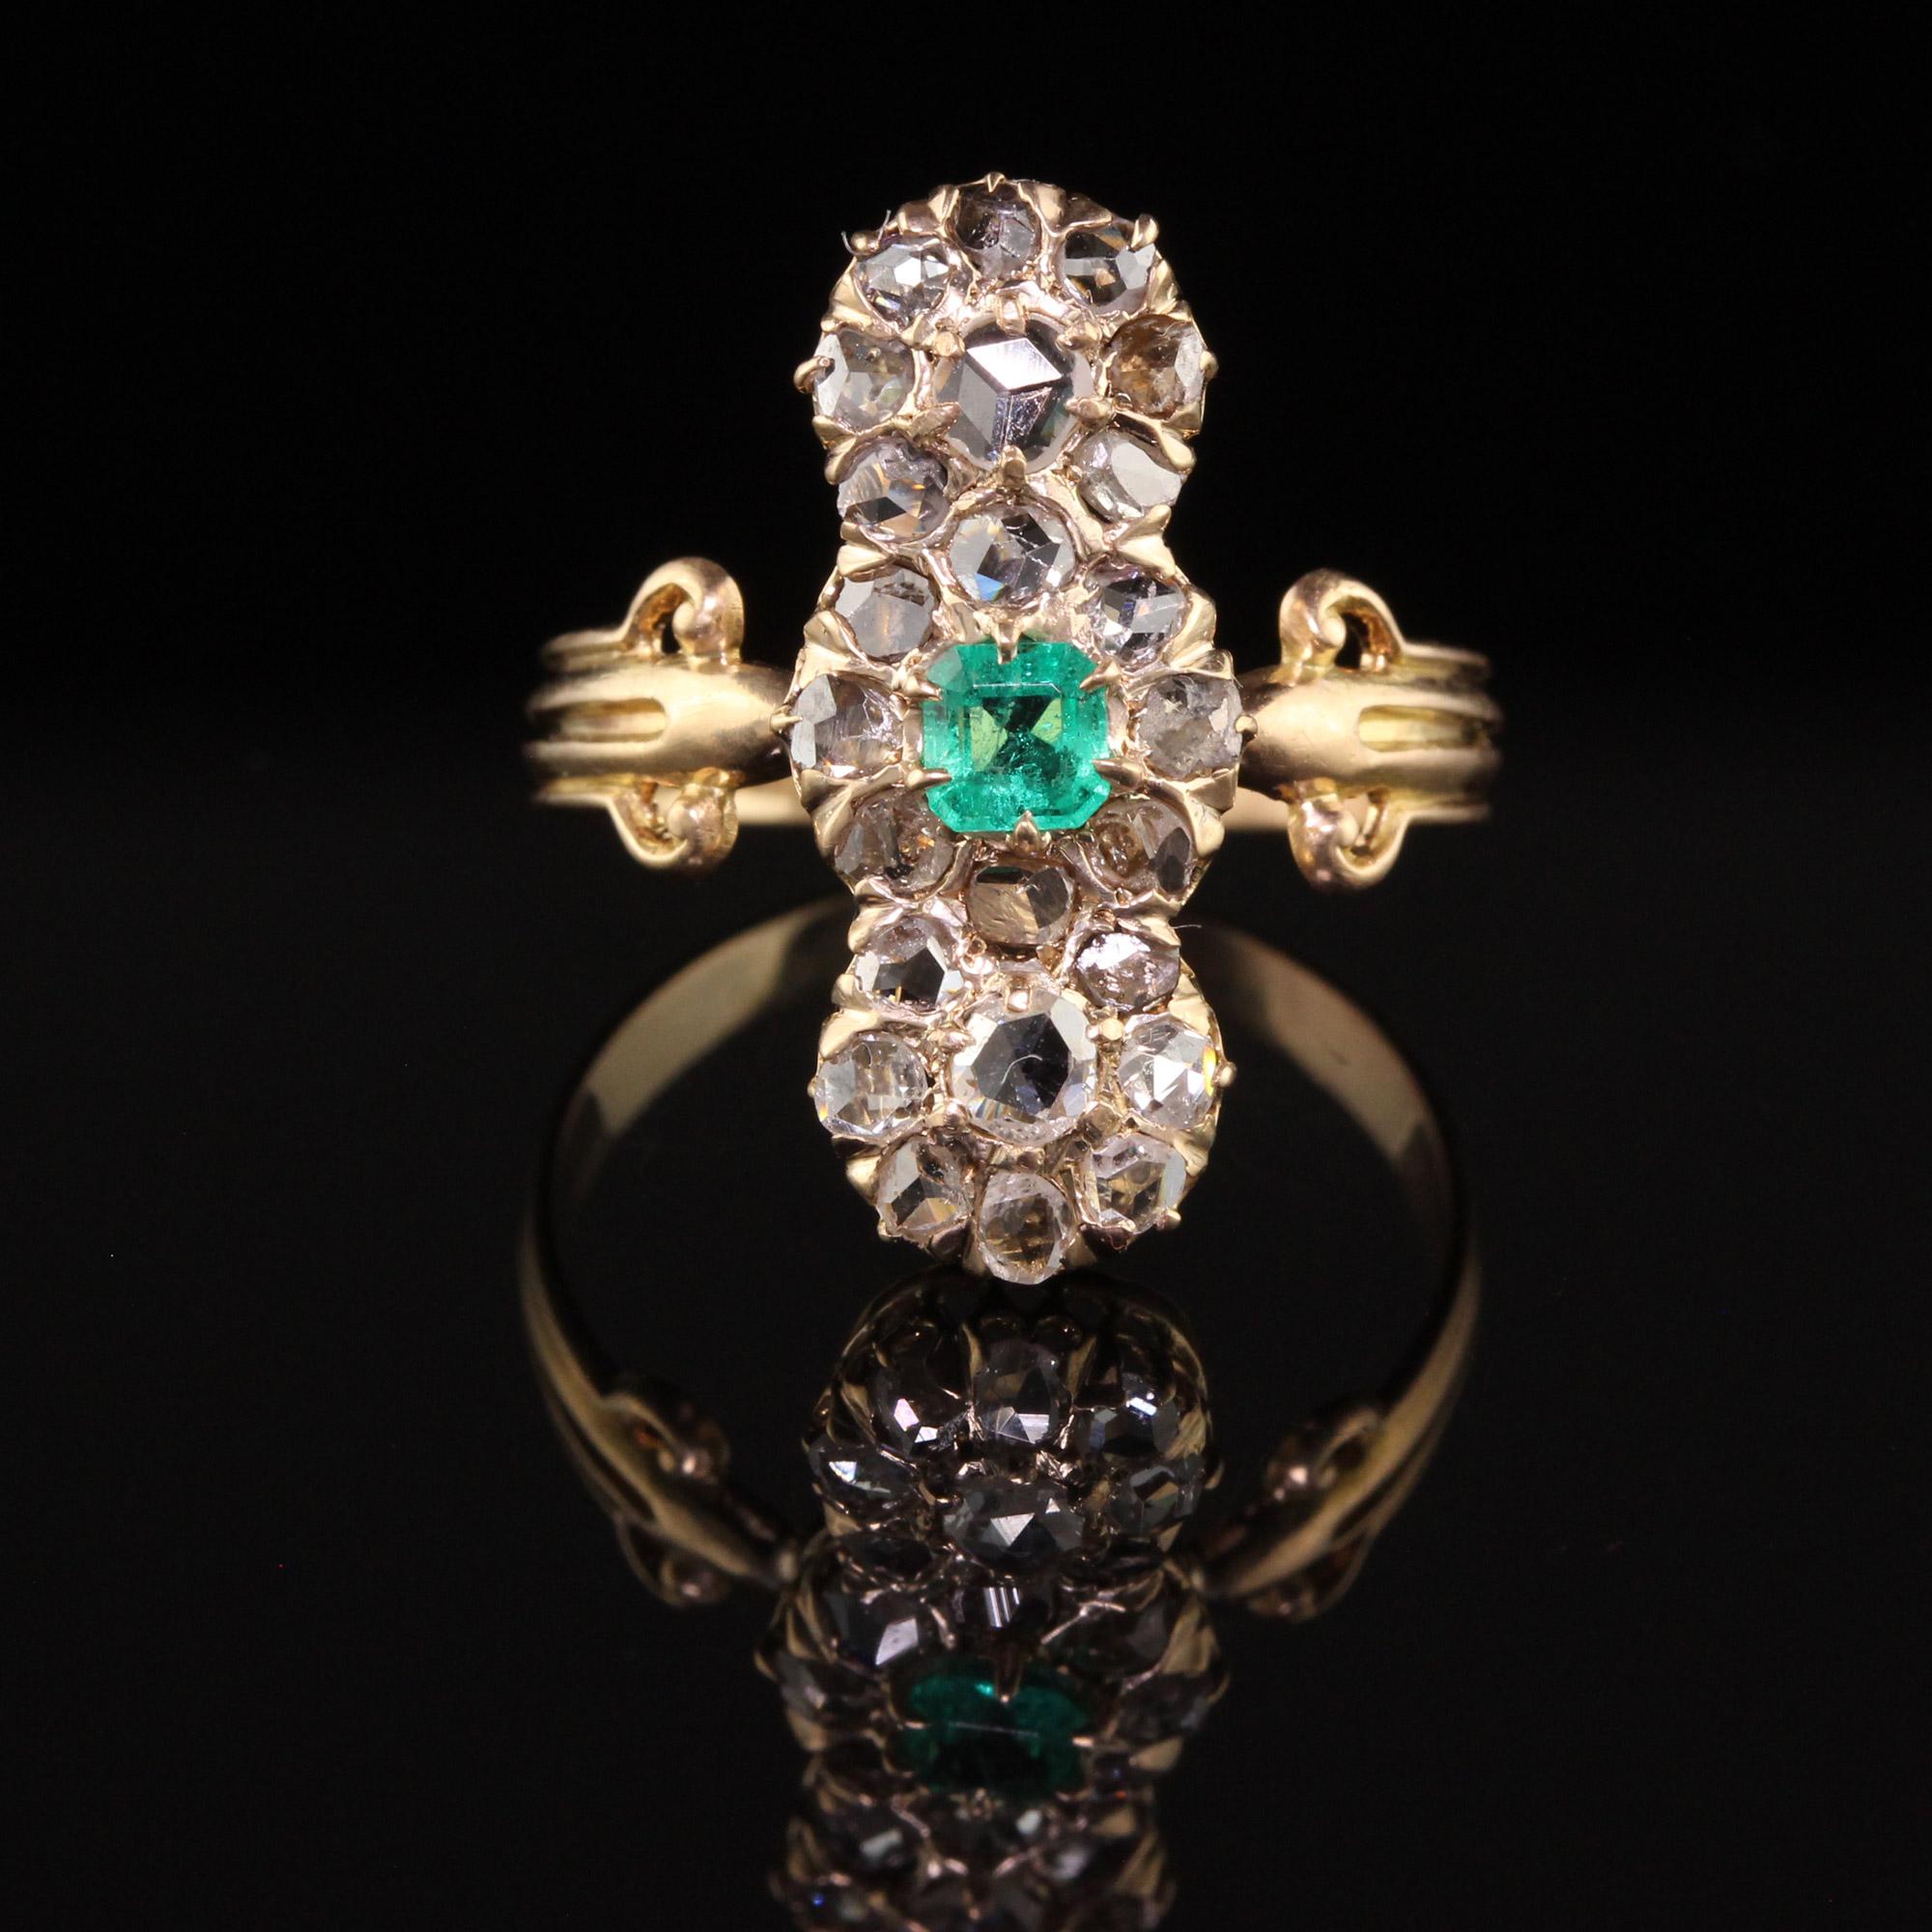 Schöne antike viktorianische 18K Gelbgold Rose Cut Diamant und Smaragd Schild Ring. Dieser wunderschöne Schildring ist aus 18 Karat Gelbgold gefertigt. Der Ring ist mit weißen Diamanten im Rosenschliff besetzt. In der Mitte befindet sich ein